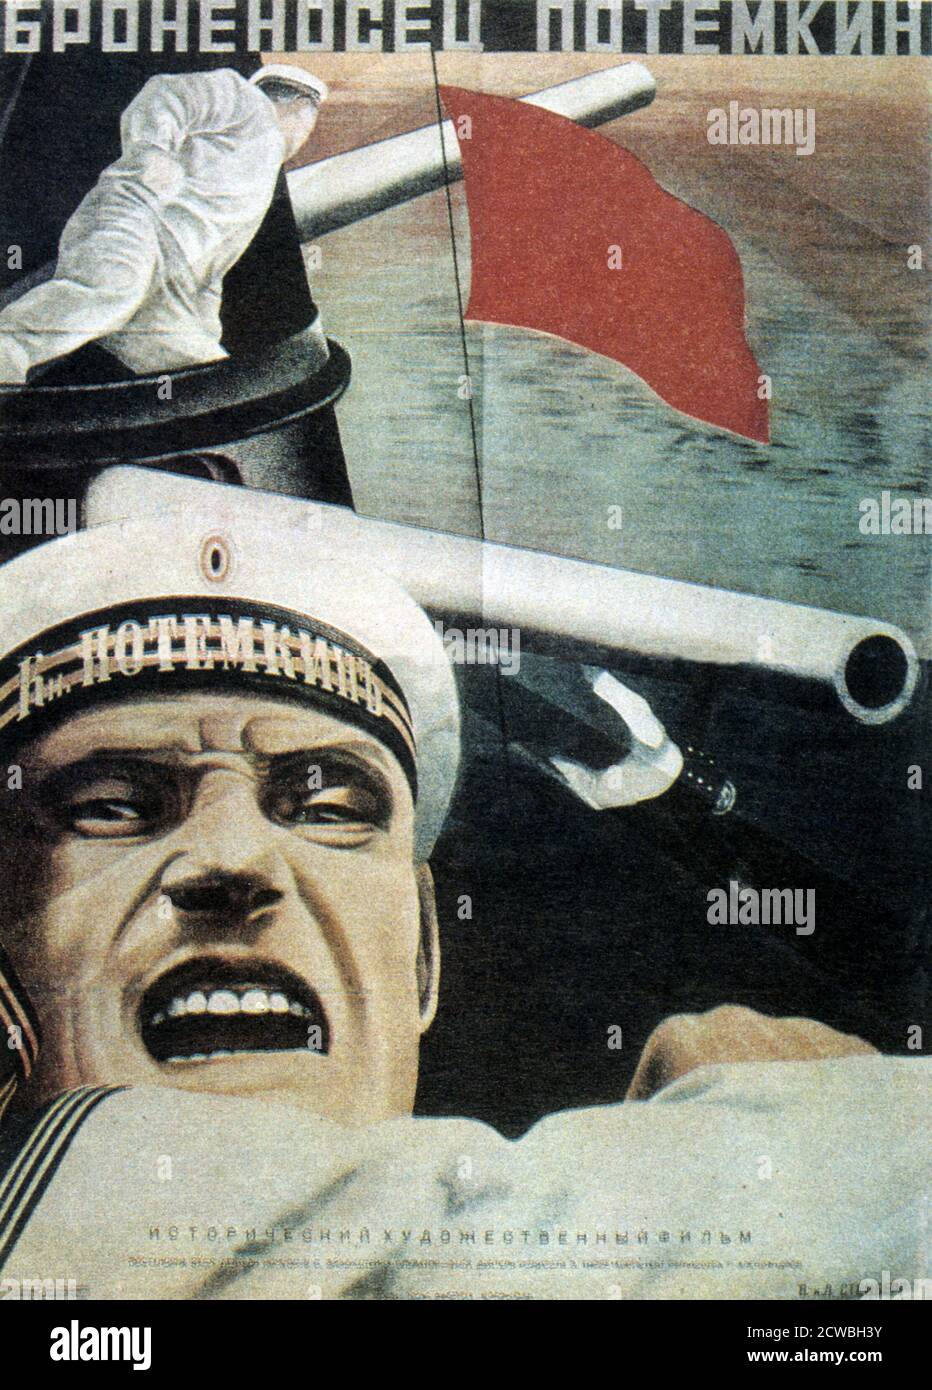 Affiche de propagande soviétique russe pour 'Battleship Potemkin' un film soviétique silencieux de 1925 réalisé par Sergei Eisenstein et produit par Mosfilm. Il présente une version dramatisée de la mutinerie qui s'est produite en 1905 lorsque l'équipage du cuirassé russe Potemkin s'est rebellé contre ses officiers. Banque D'Images